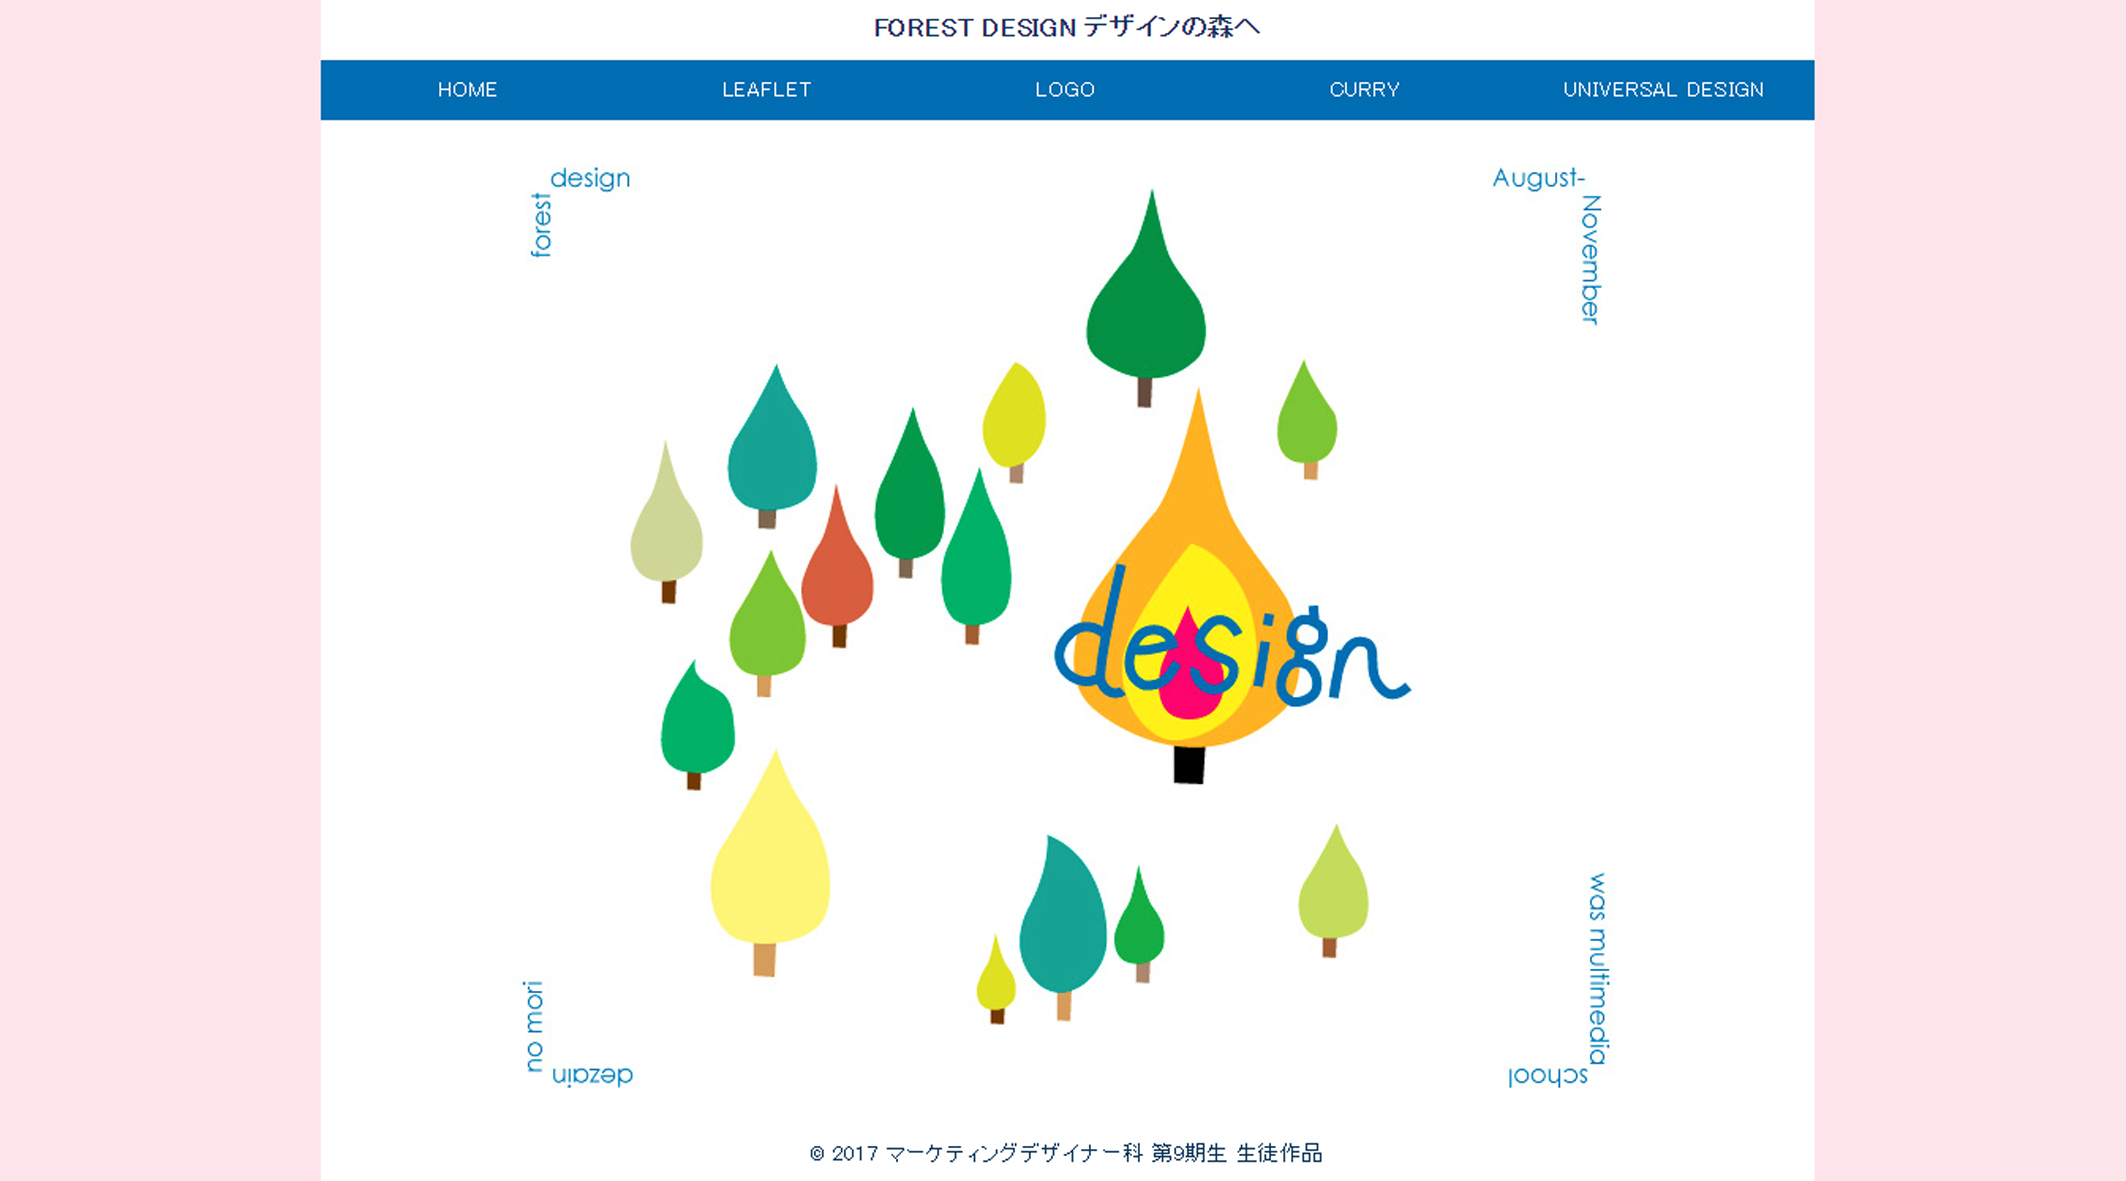 マーケティングデザイナー養成科 10期生作品 FOREST DESIGN デザインの森へ